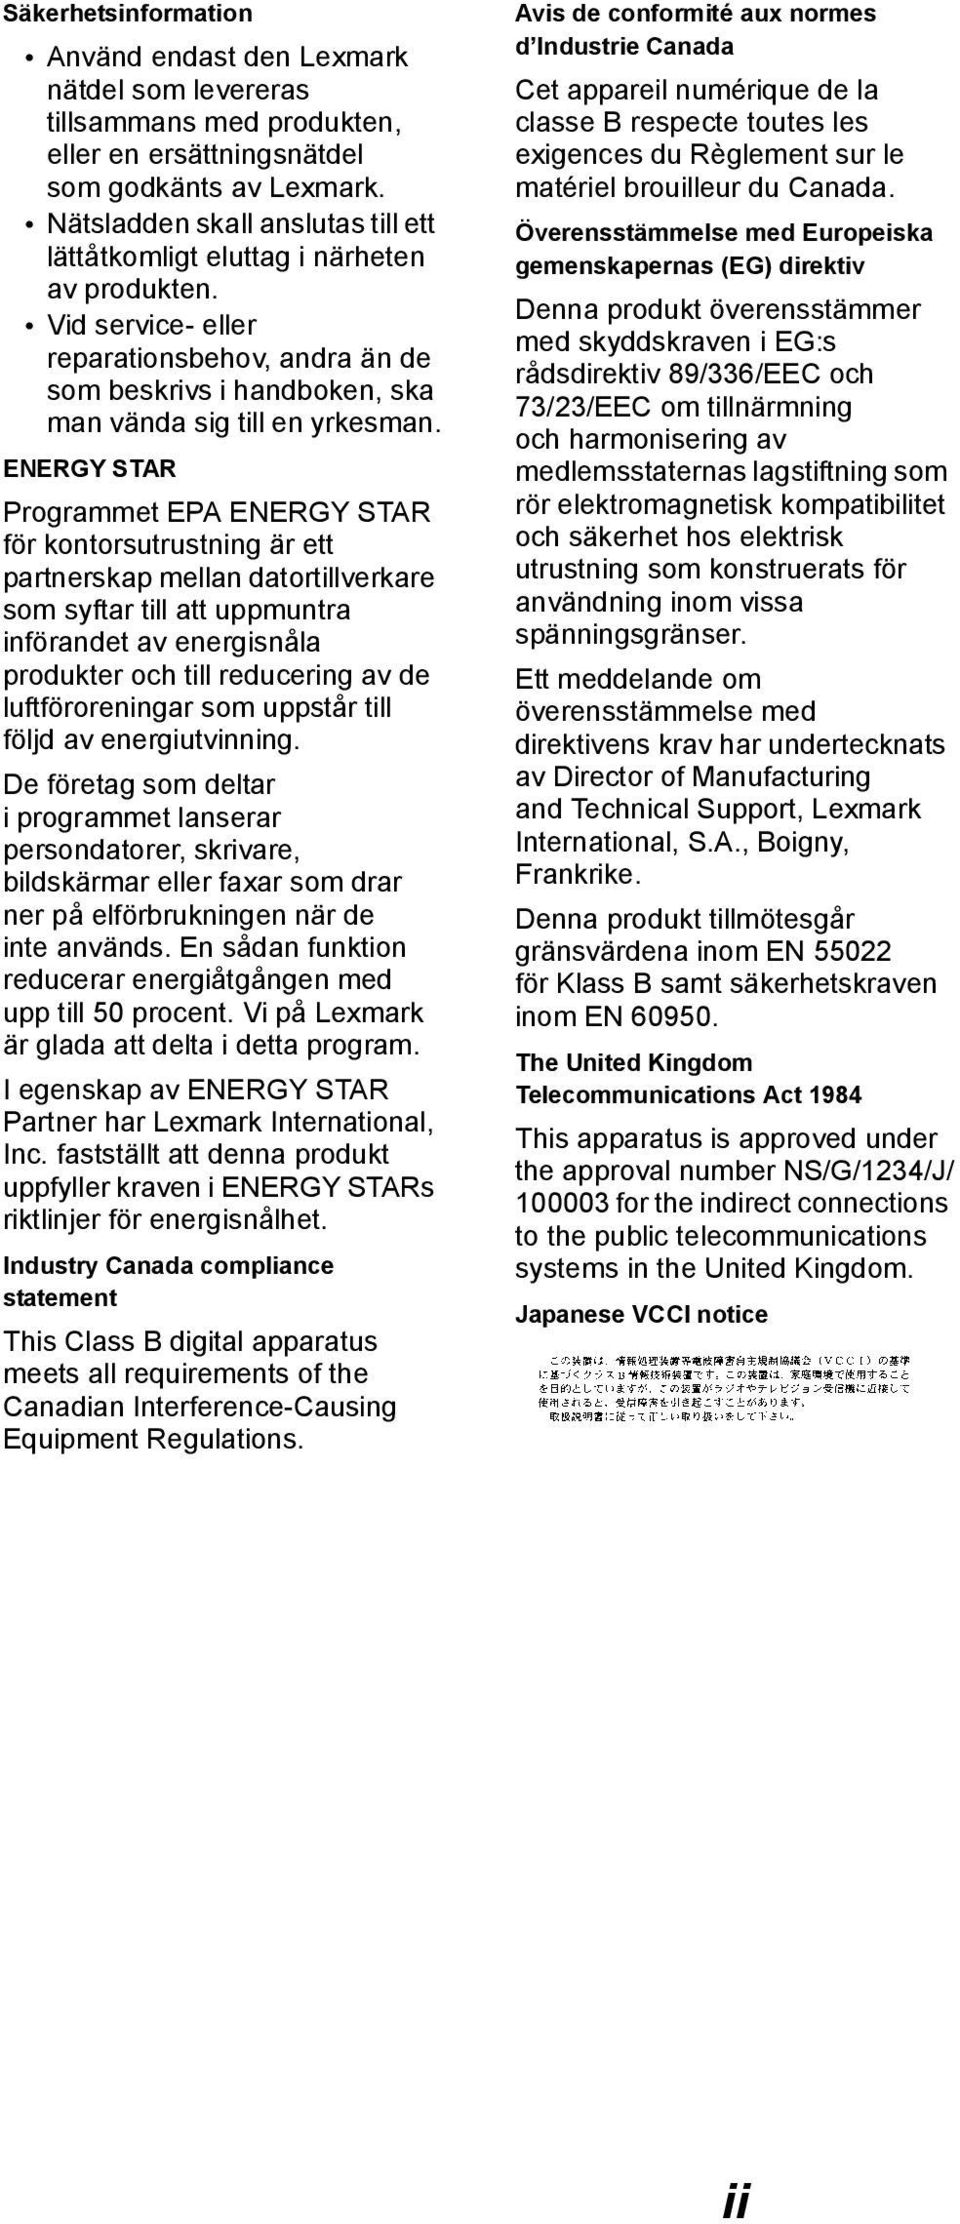 ENERGY STAR Programmet EPA ENERGY STAR för kontorsutrustning är ett partnerskap mellan datortillverkare som syftar till att uppmuntra införandet av energisnåla produkter och till reducering av de